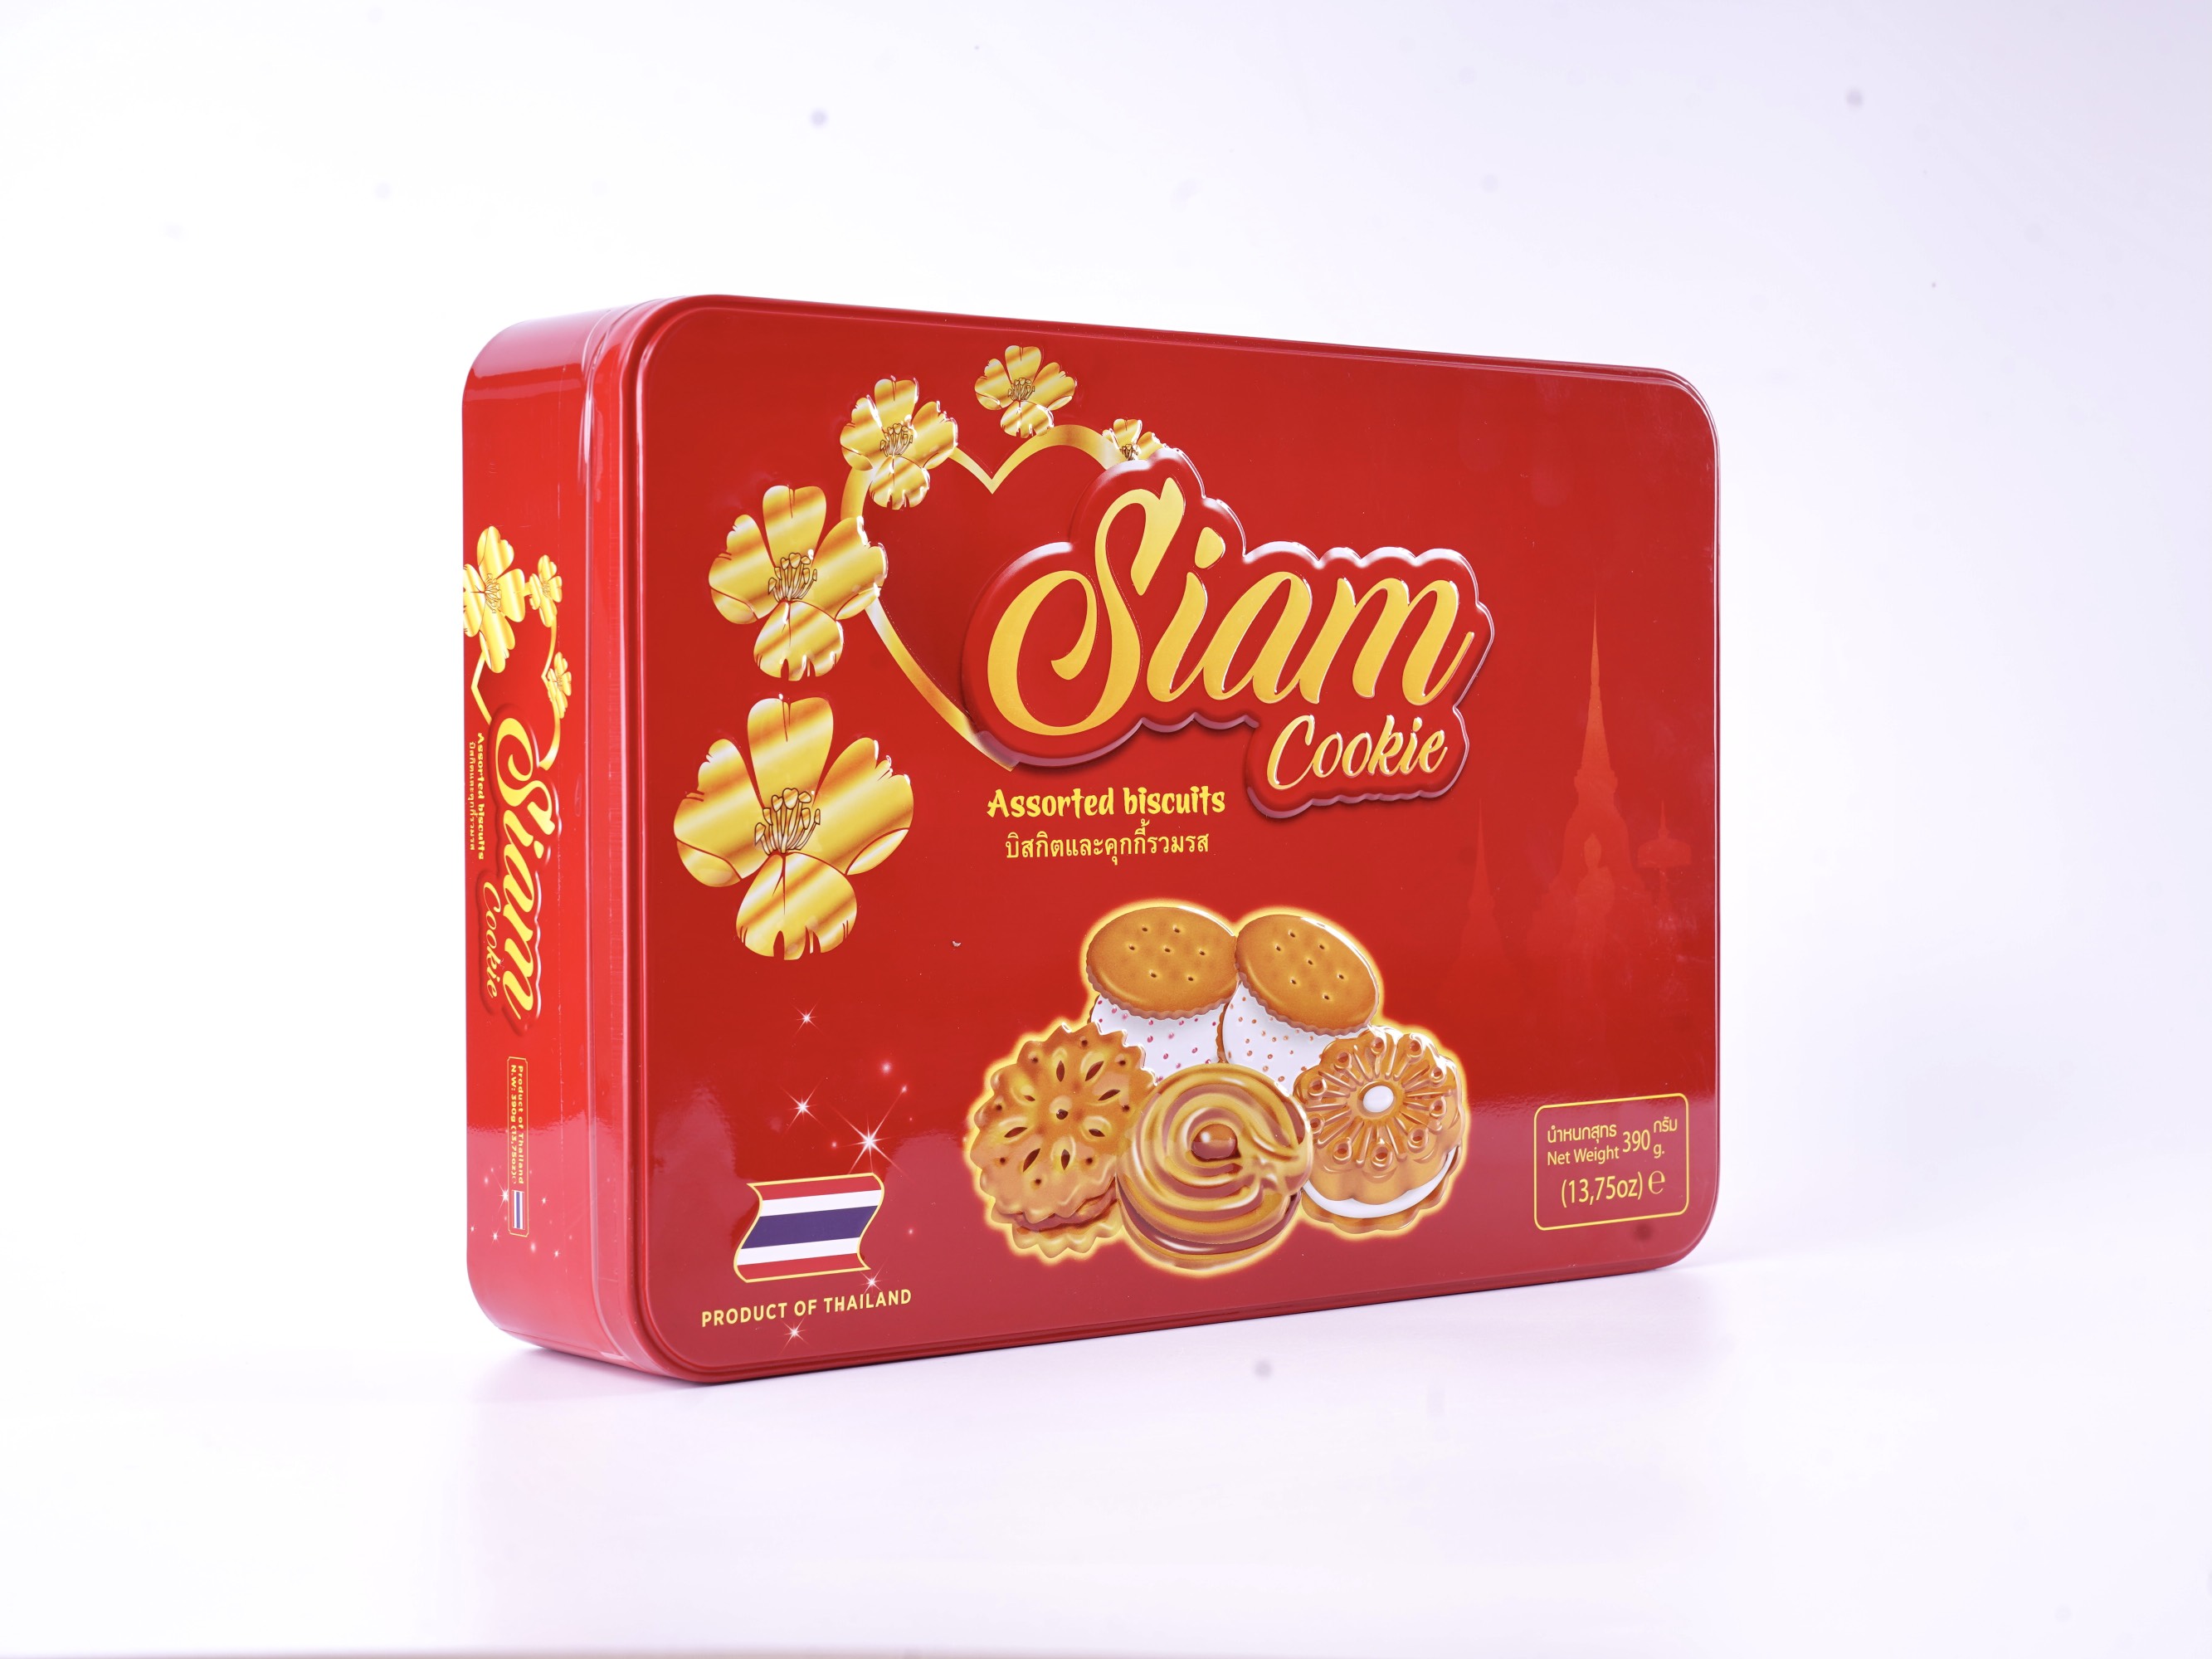 Bánh quy Siam mix các vị 390g - Hộp chữ nhật Màu đỏ